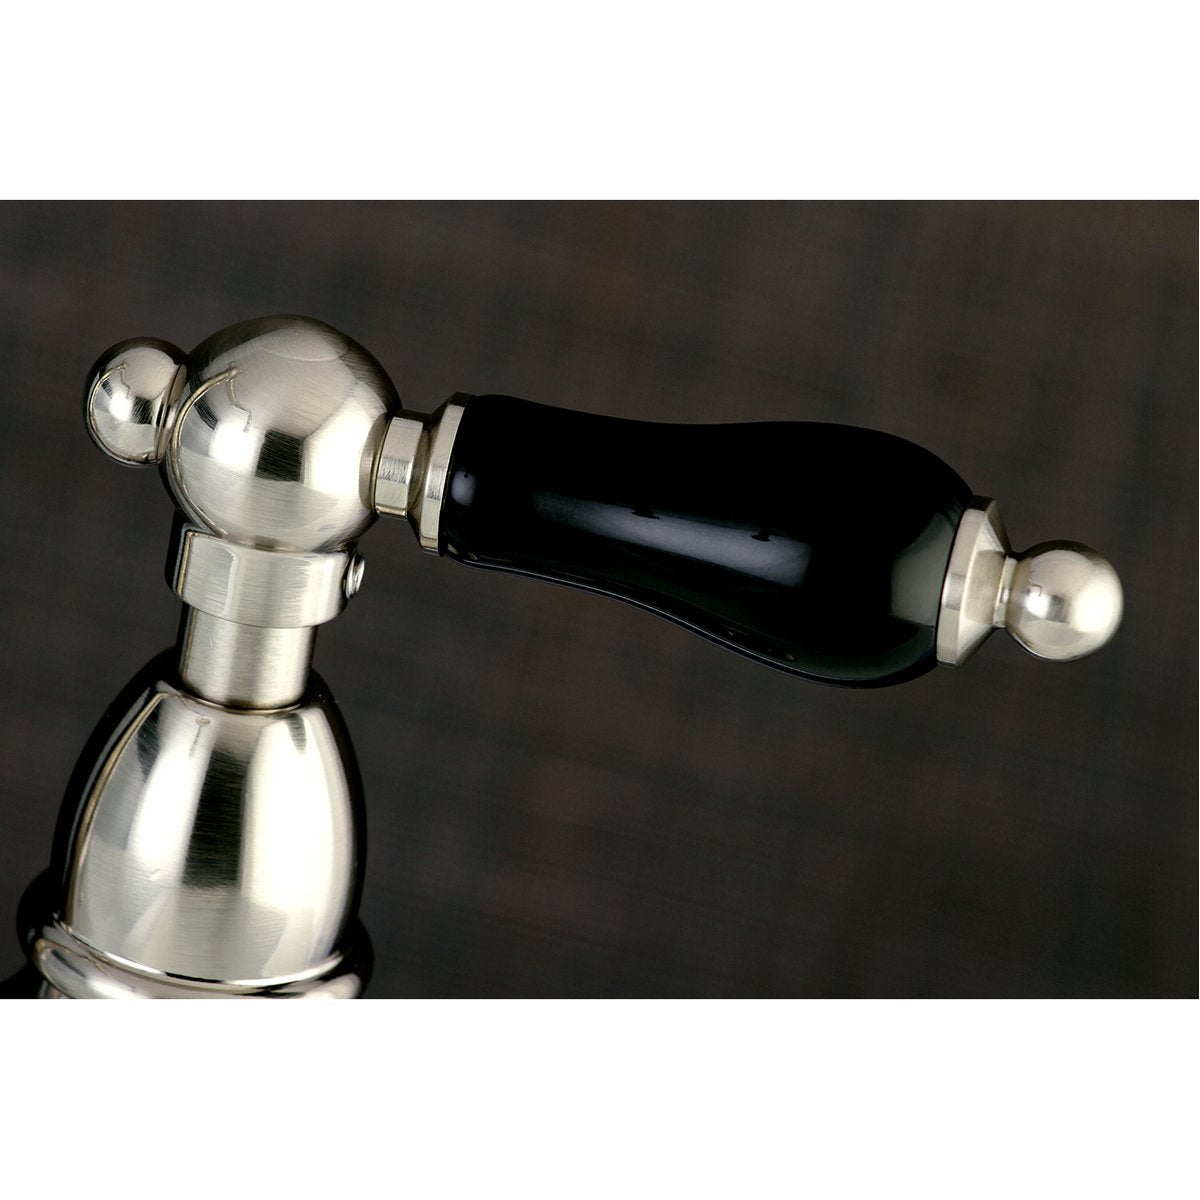 Kingston Brass Duchess 8" Centerset Kitchen Faucet Less Sprayer